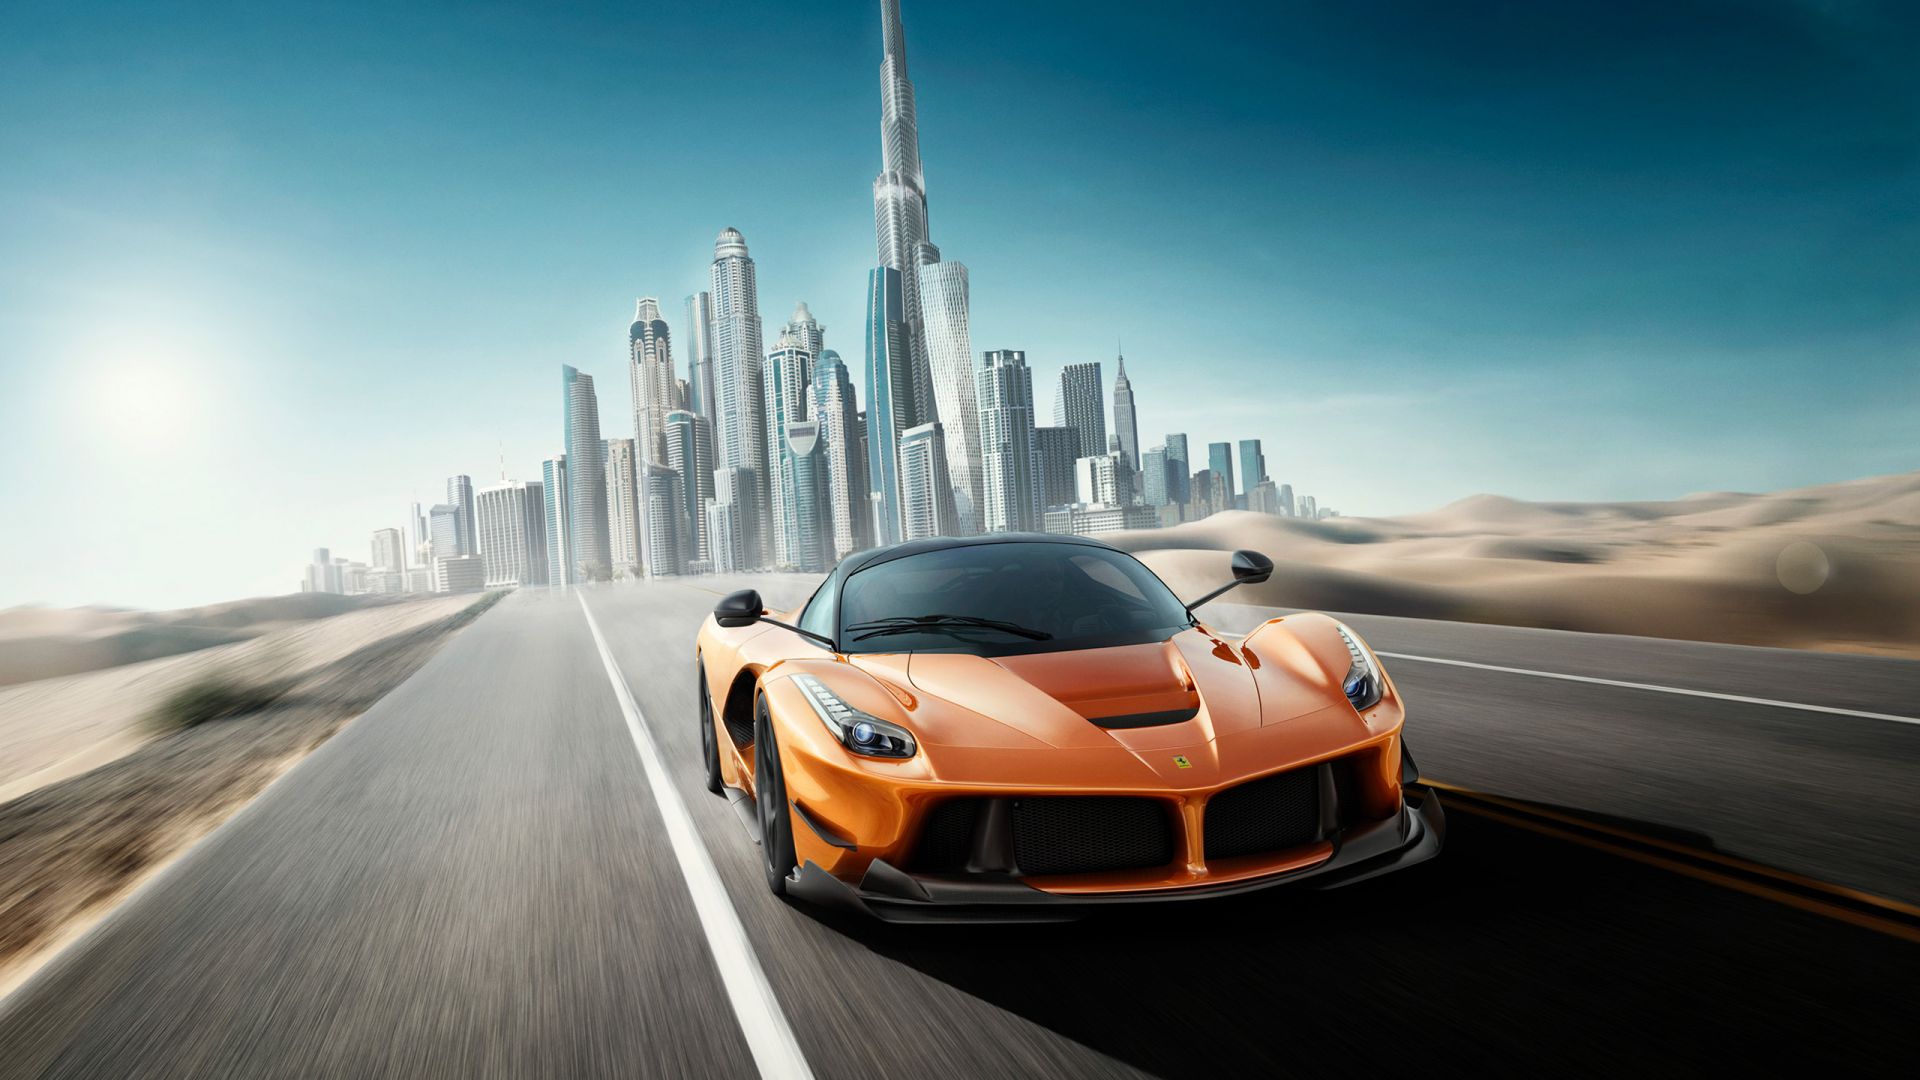 Wallpaper Ferrari, sports car, motion blur, Dubai